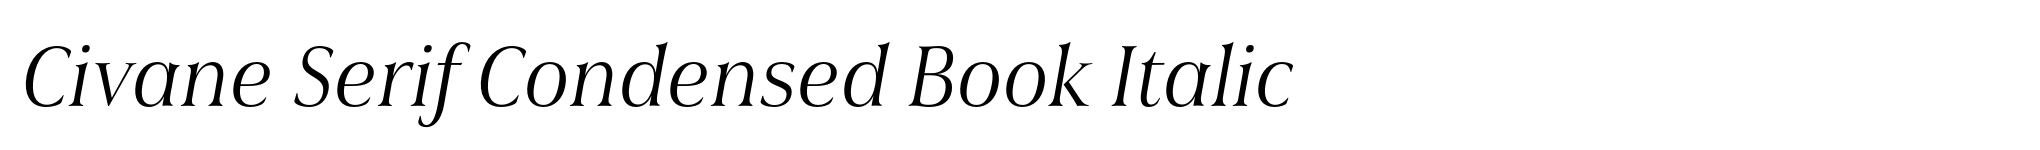 Civane Serif Condensed Book Italic image